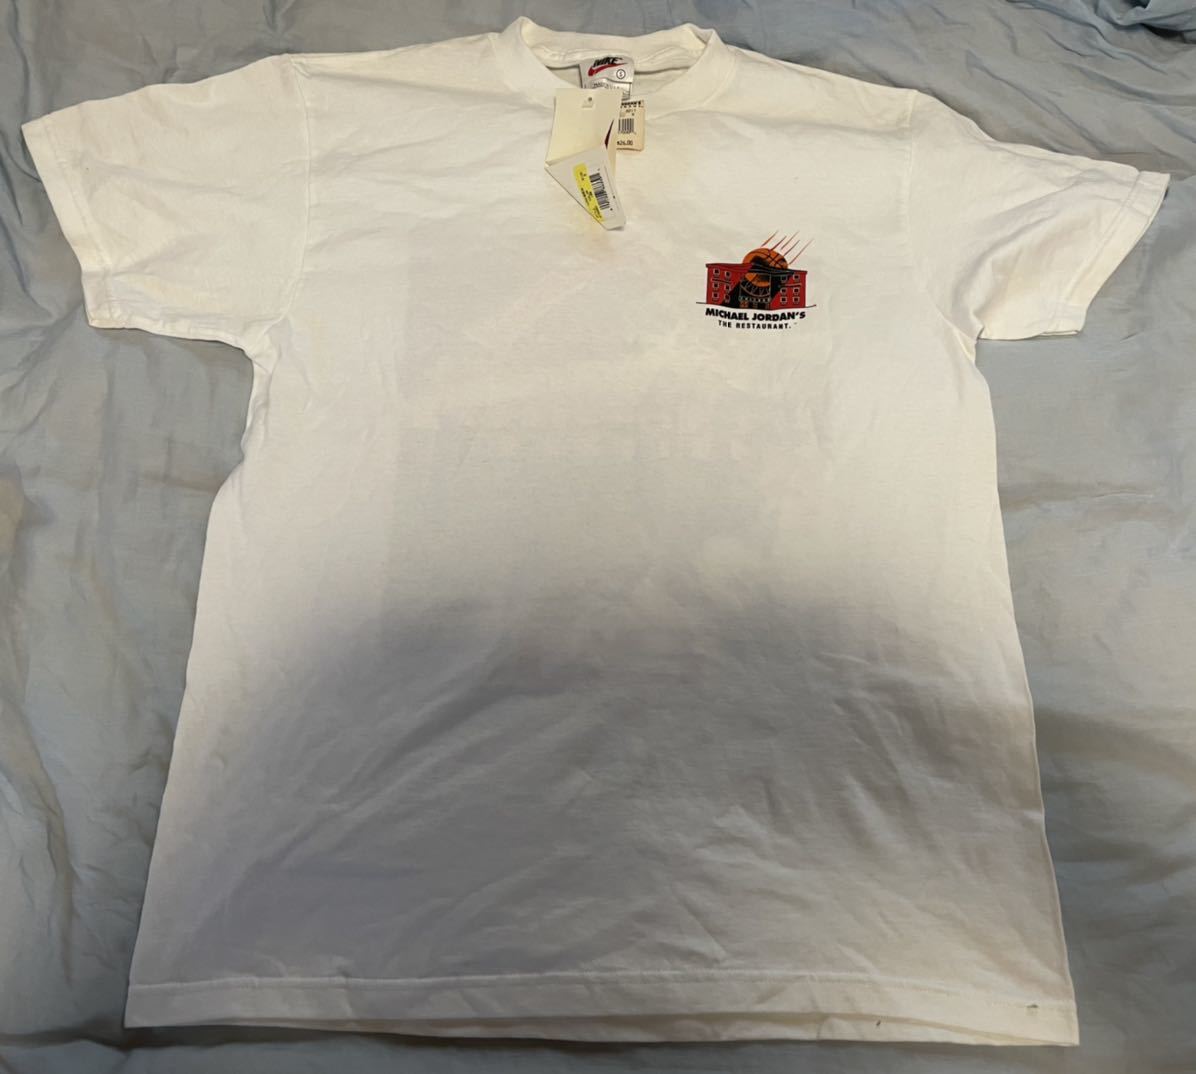 Michael Jordan's The Restaurant T-shirt マイケルジョーダンレストラン Tシャツ Sサイズ アメリカ製ナイキ  タグ付き 未使用品 当時物